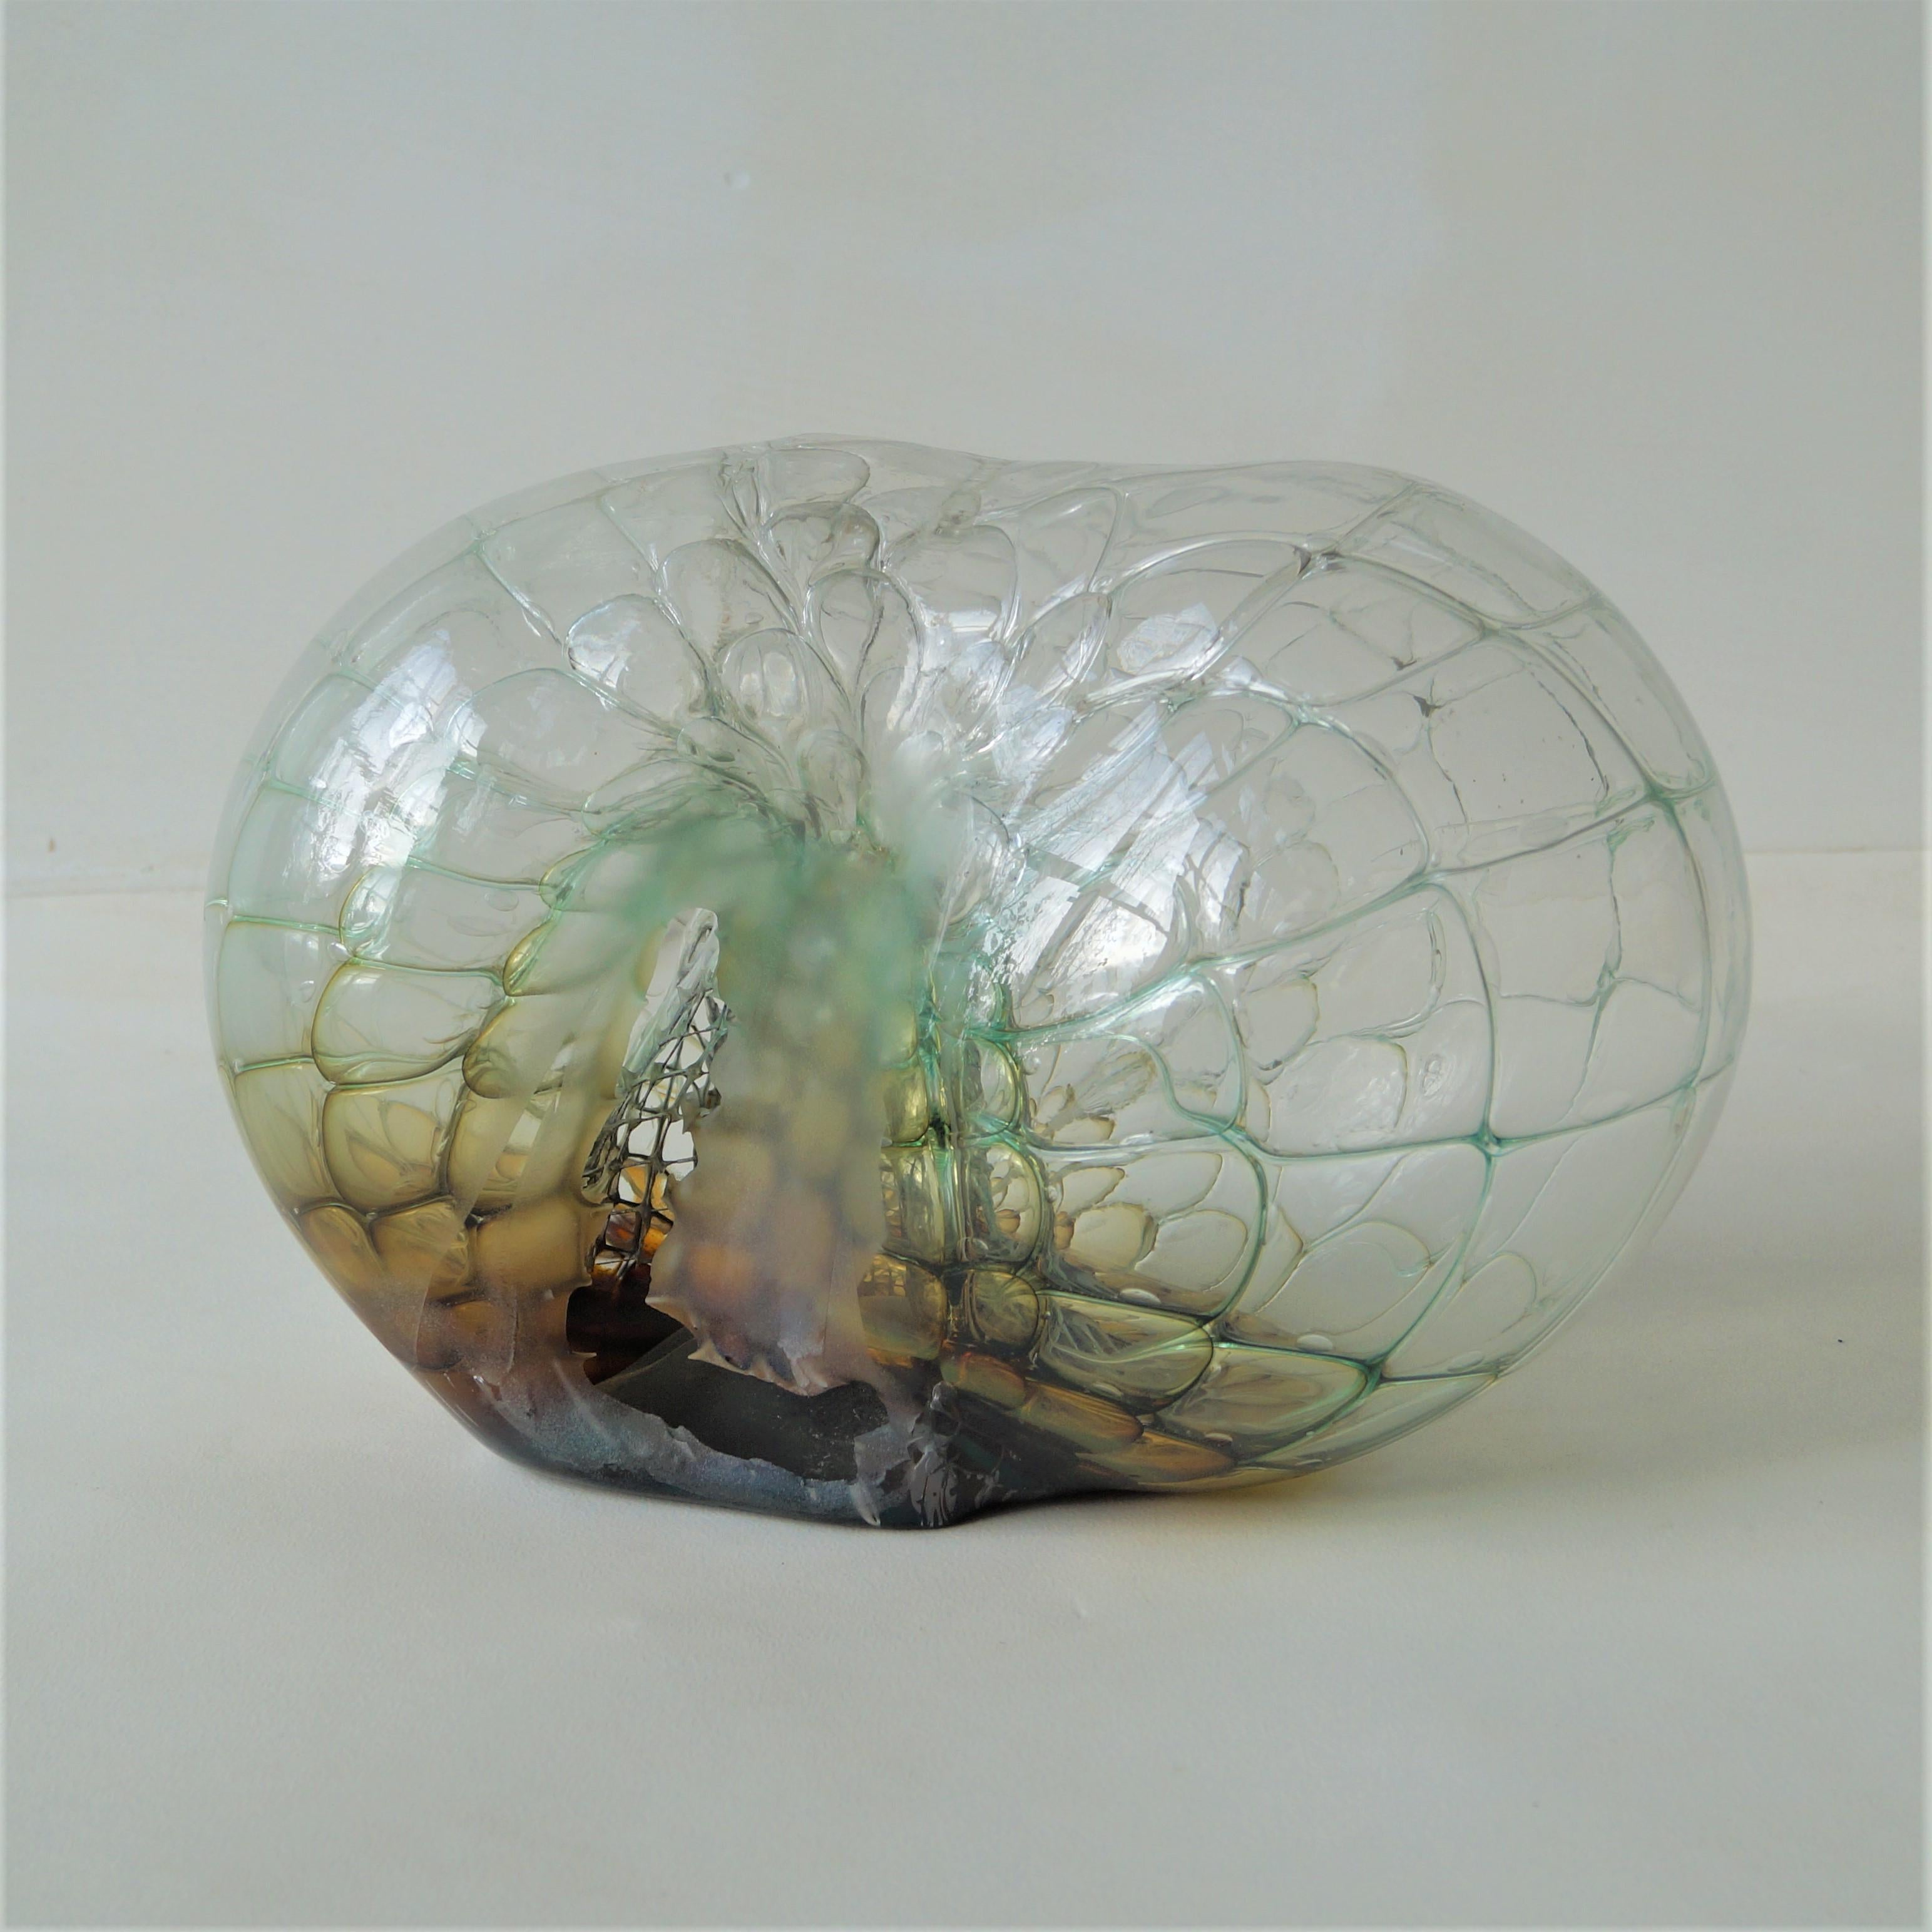 Eine beeindruckend große Skulptur aus klarem Glas mit einem Kern aus grünem/gelbem/kognakfarbenem Glas, einer Überlagerung aus klarem Glas und einem Metallgeflecht (Bienenwaben) im Inneren. Schöpfer ist Jorg F. Zimmerman, geschätzt ca. 2000. 

Das